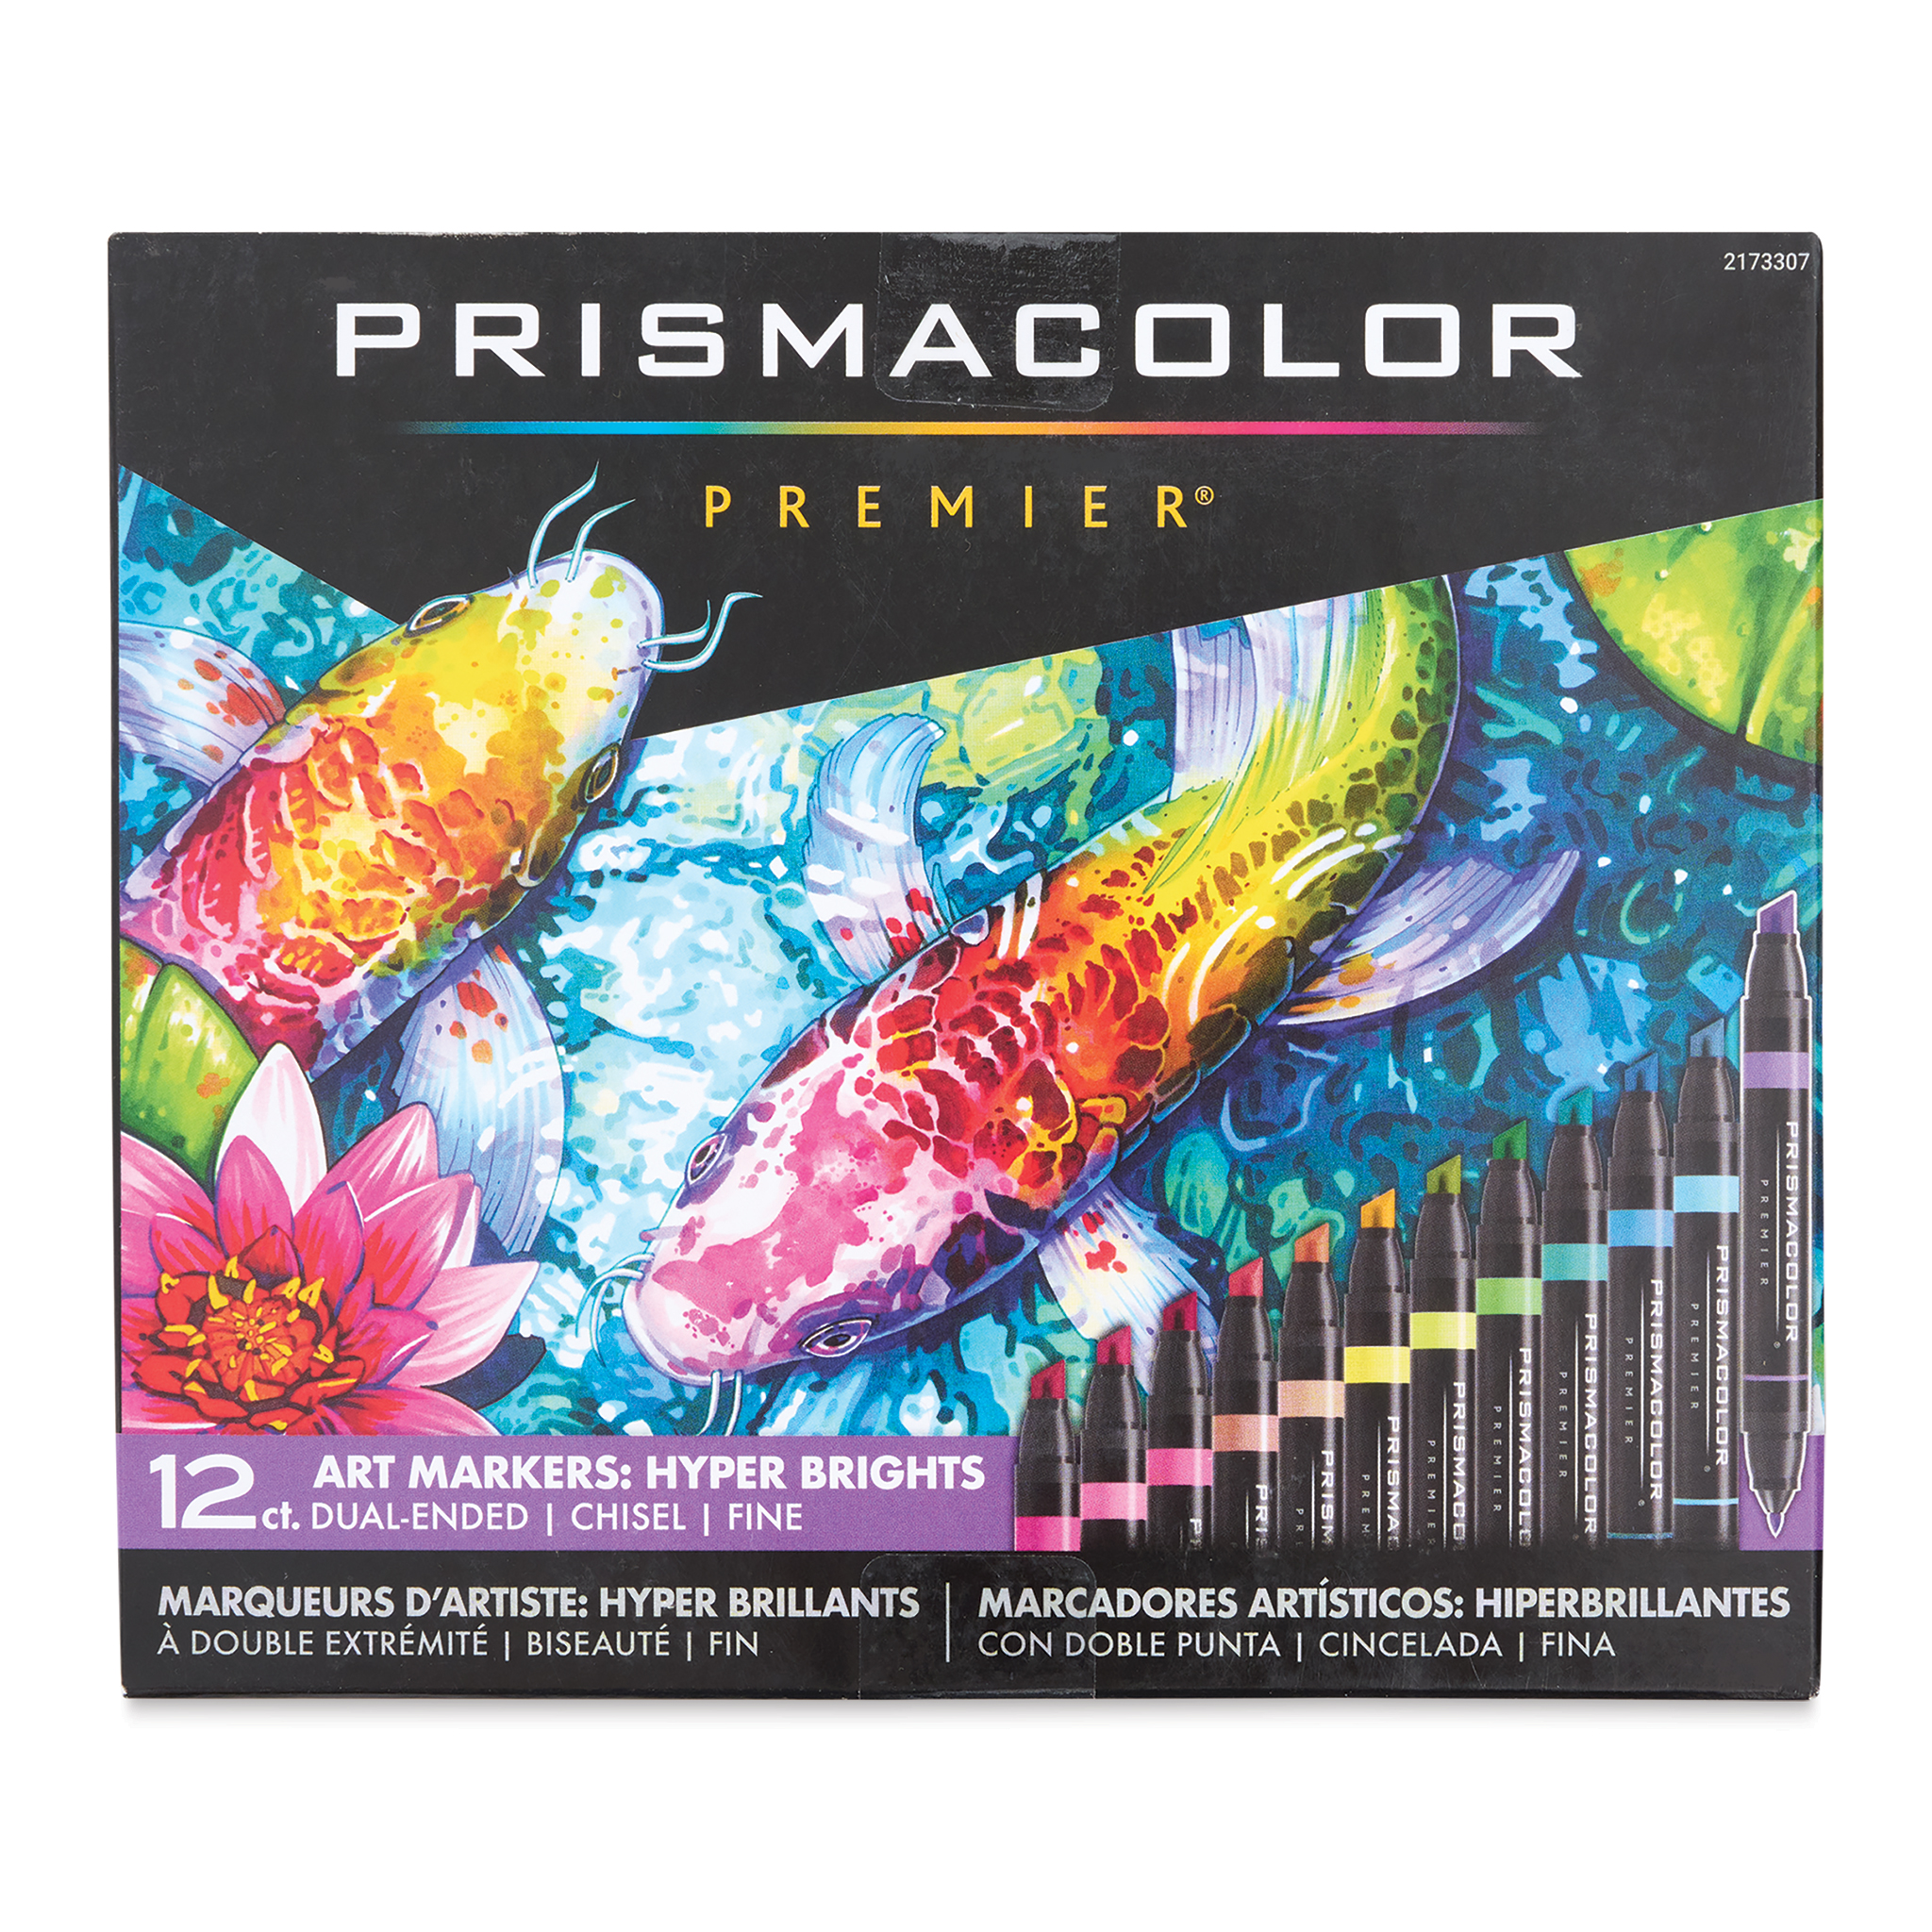 PRISMACOLOR MARKERS (27) - Tested - Chisel Tip - Art Pens